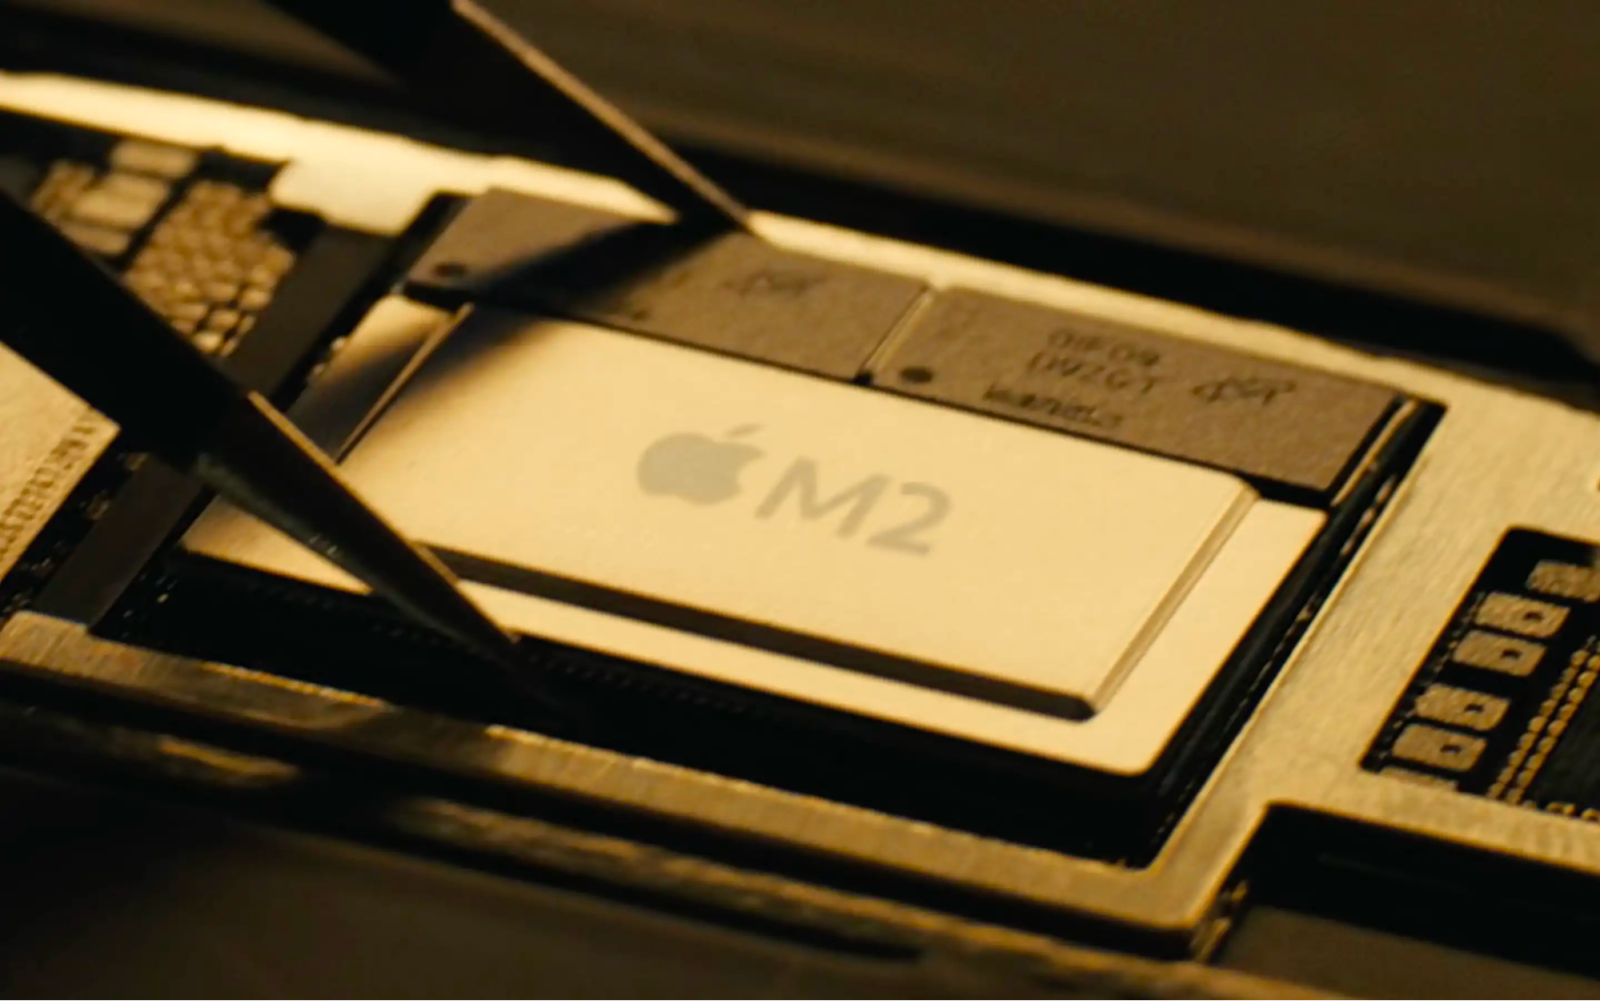 MacBook sở hữu một trong những con chip mạnh mẽ nhất trên thế giới ở thời điểm hiện tại